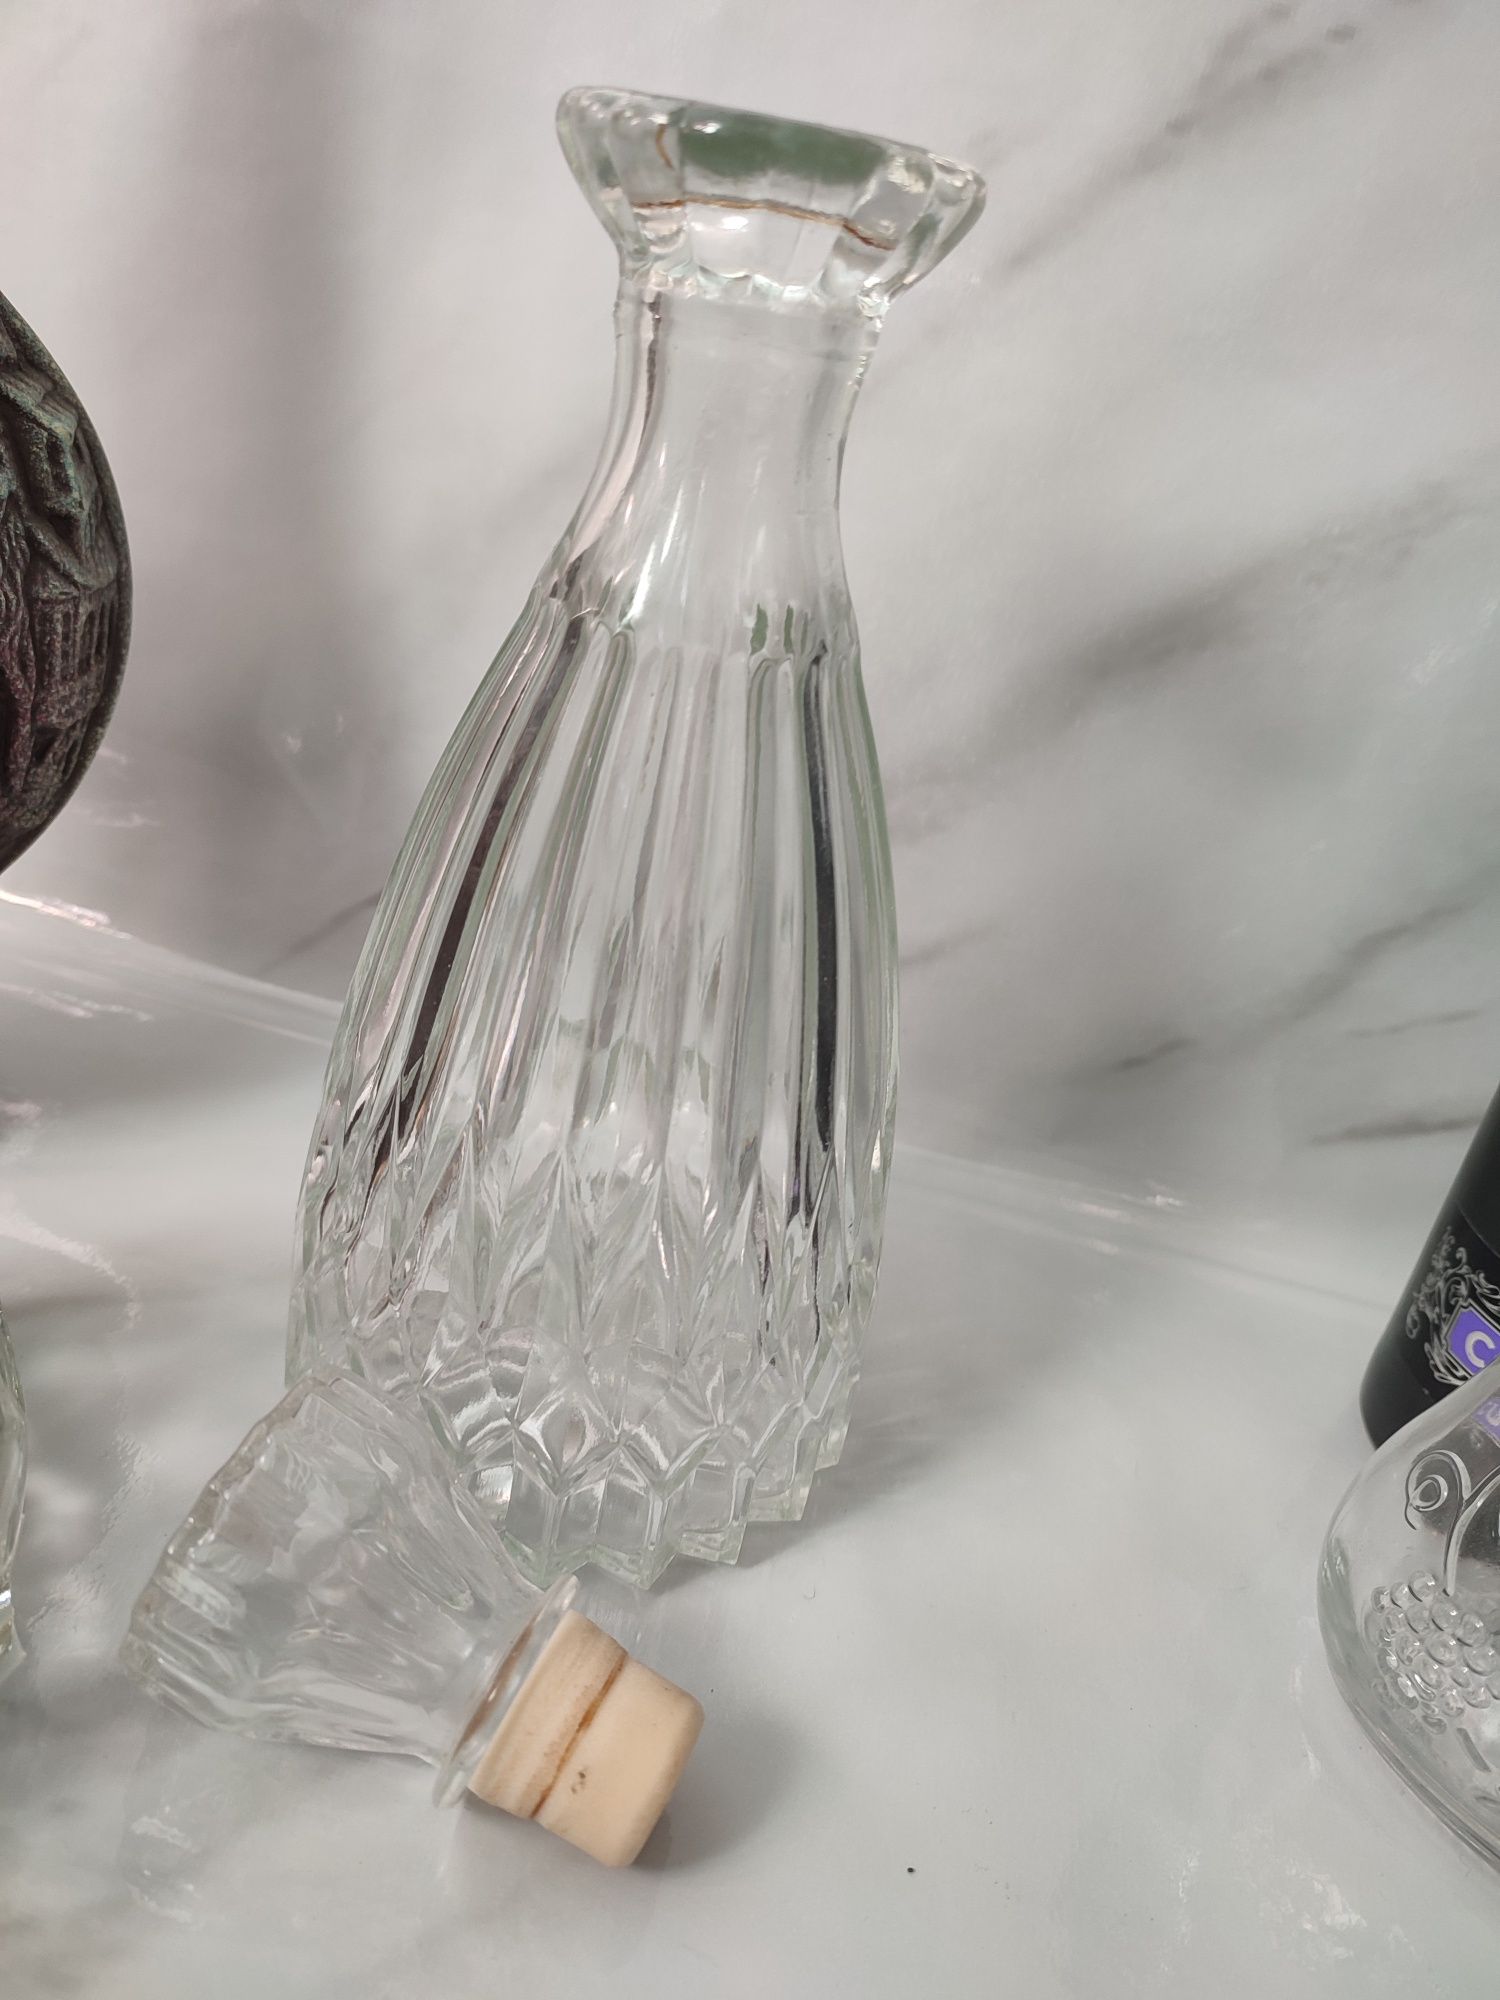 Бутылки  графин кувшин из под алкоголя разные